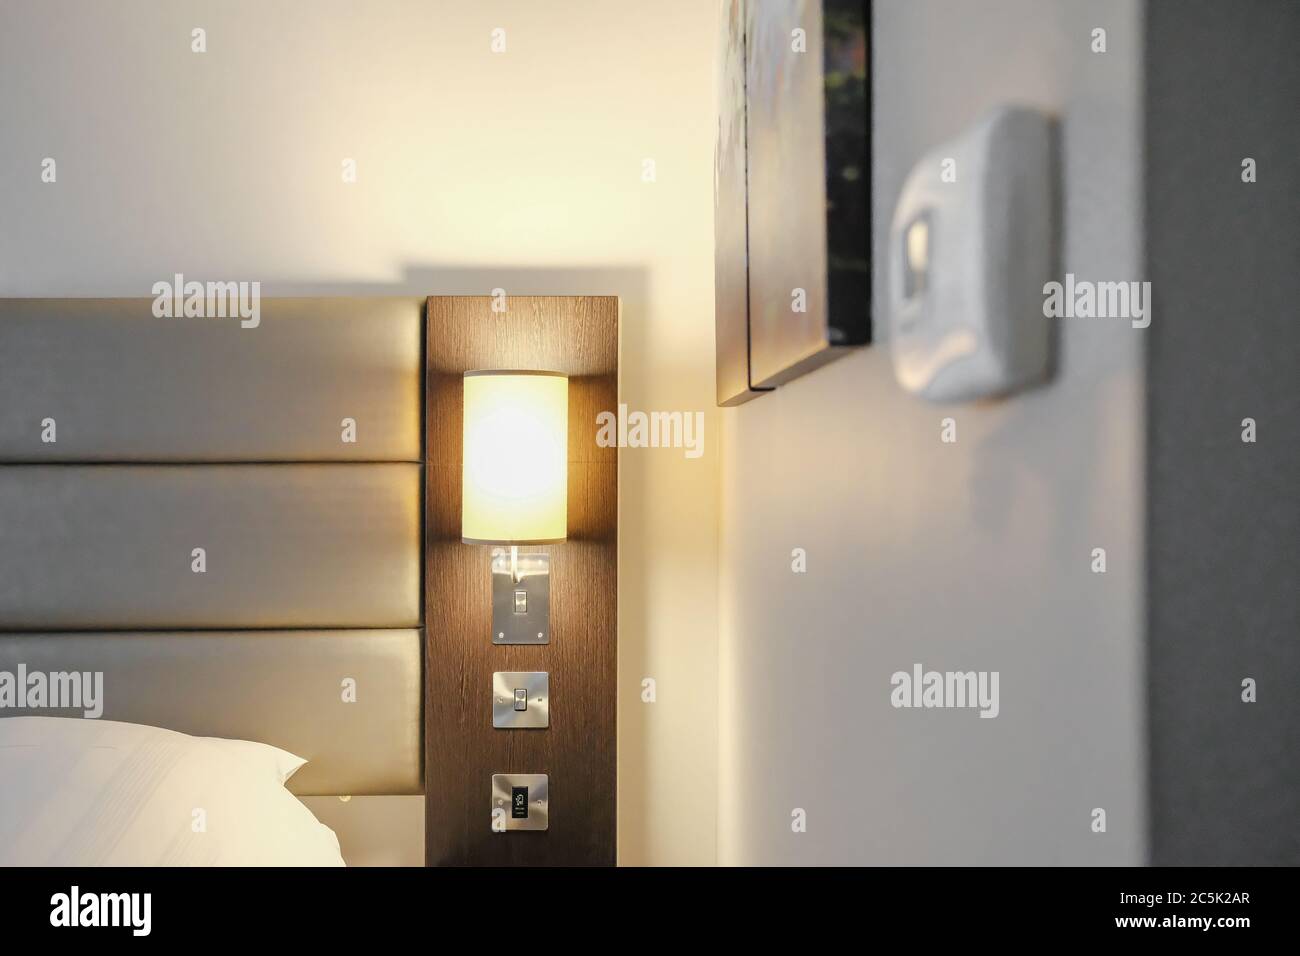 Gli ospiti dell'hotel hanno visto regolare la temperatura dell'aria condizionata in una camera d'albergo a prezzi premium. Foto Stock